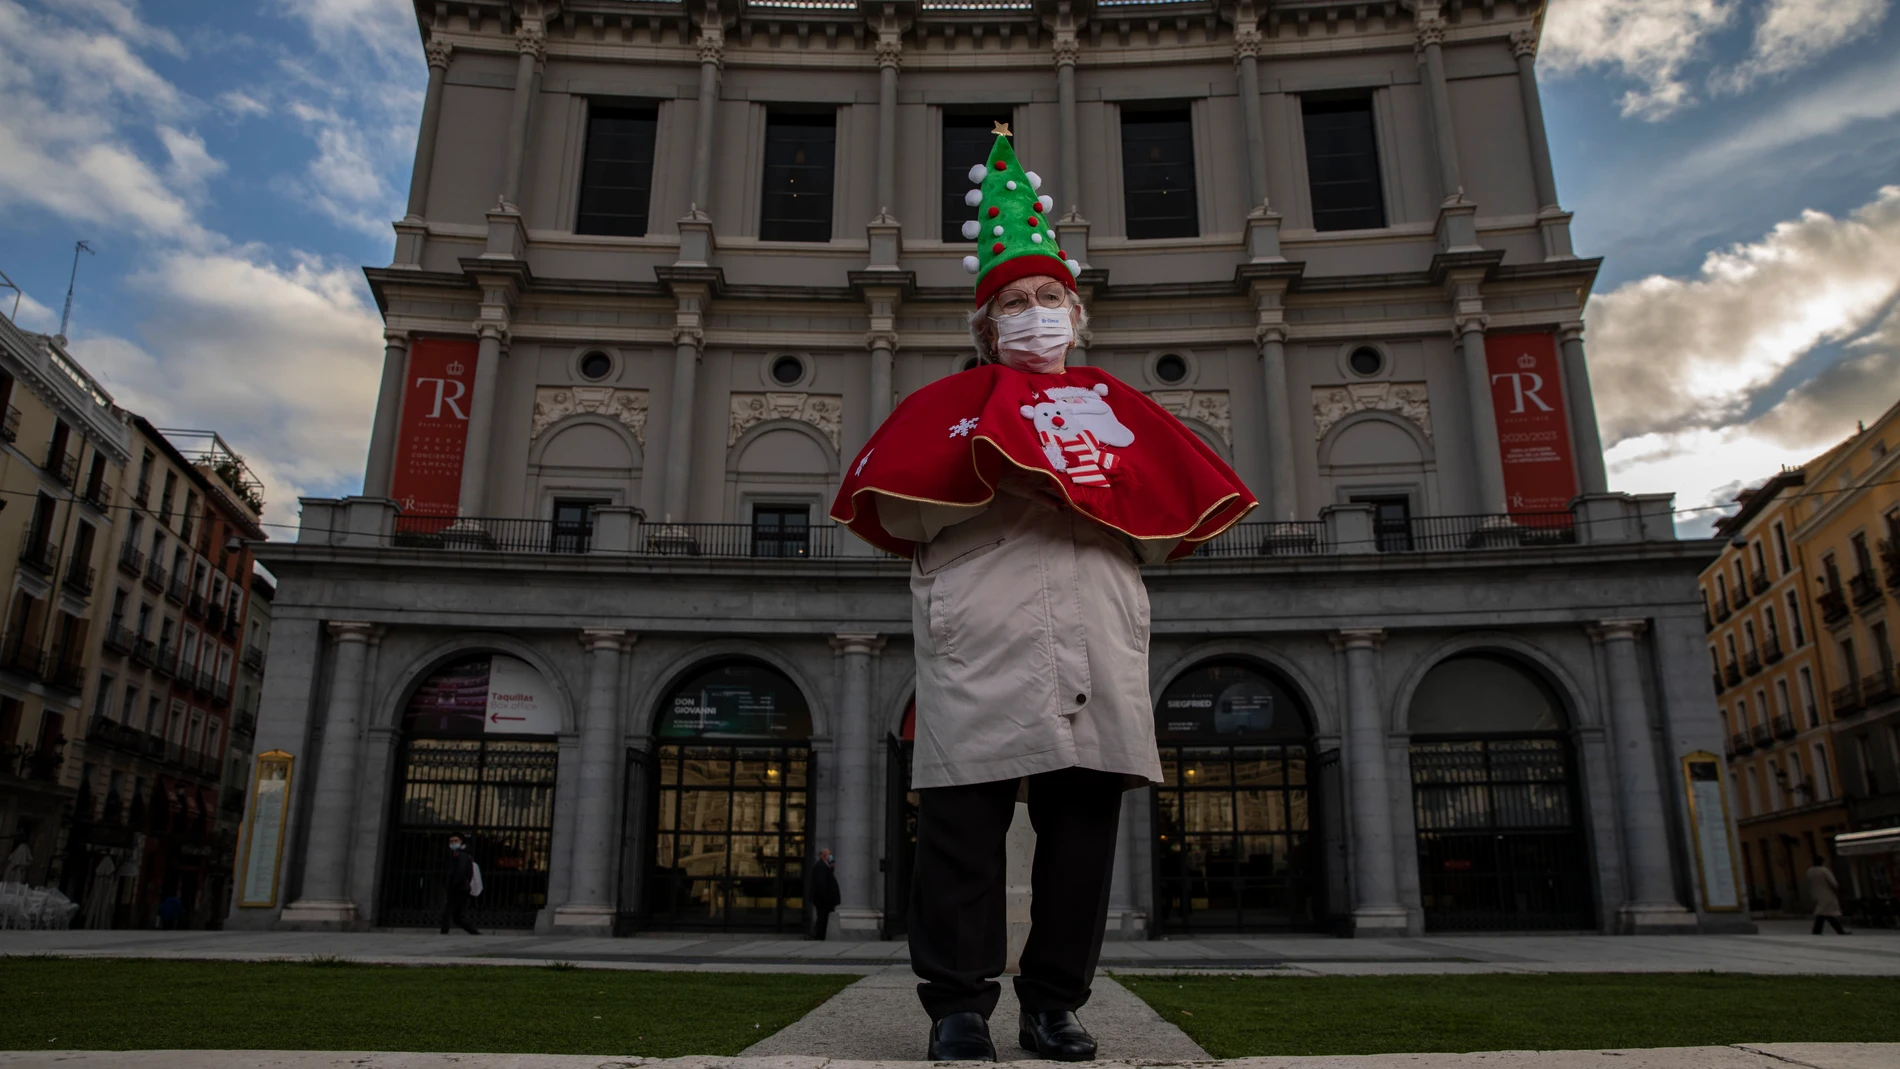 Manoli Sevilla, de 82 años, posa en el teatro real con una capa roja y un árbol de navidad como sombrero